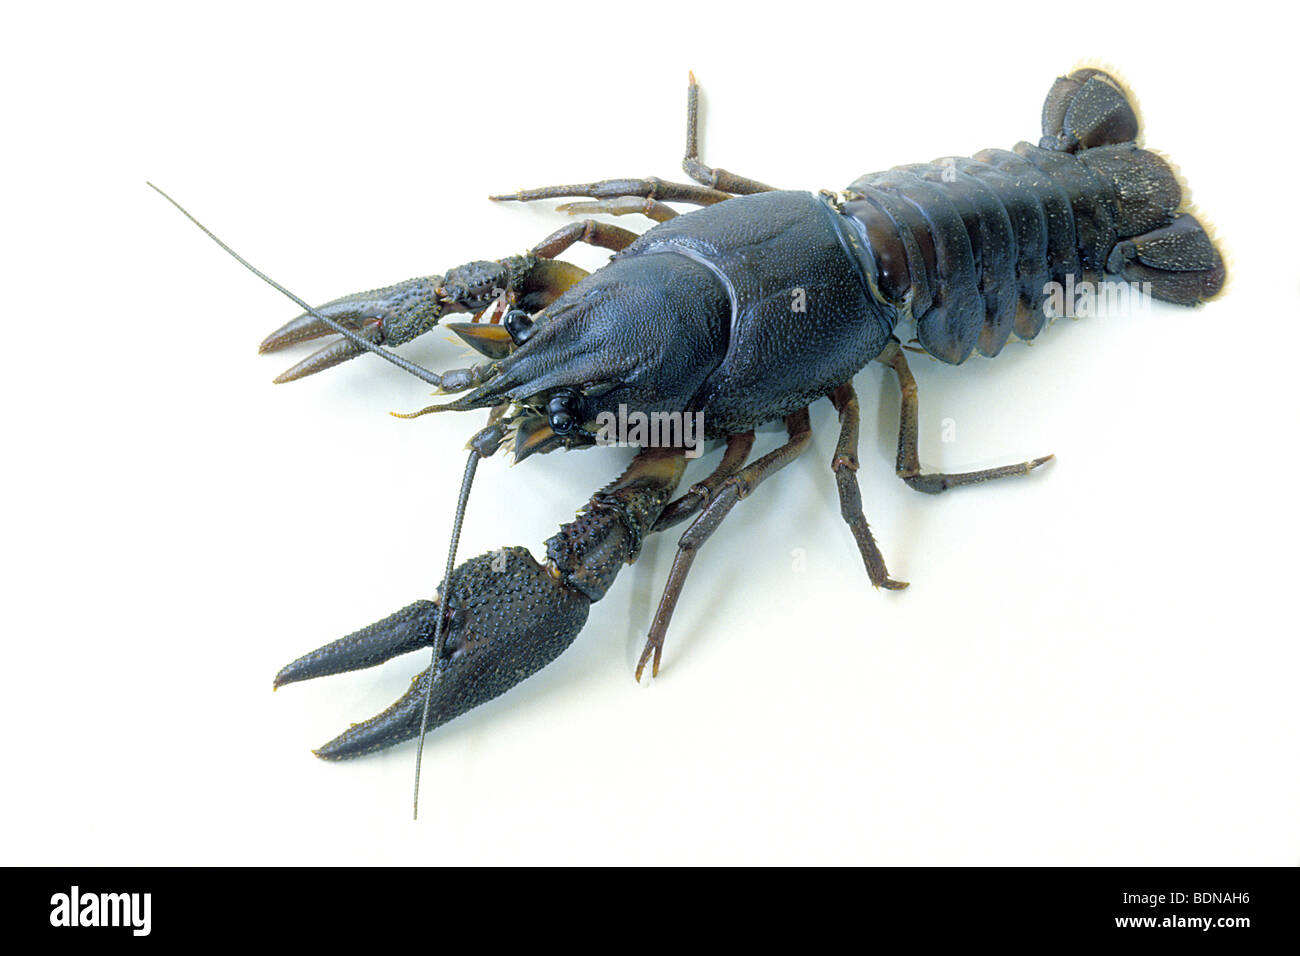 Noble Crayfish (Astacus astacus), studio picture. Stock Photo